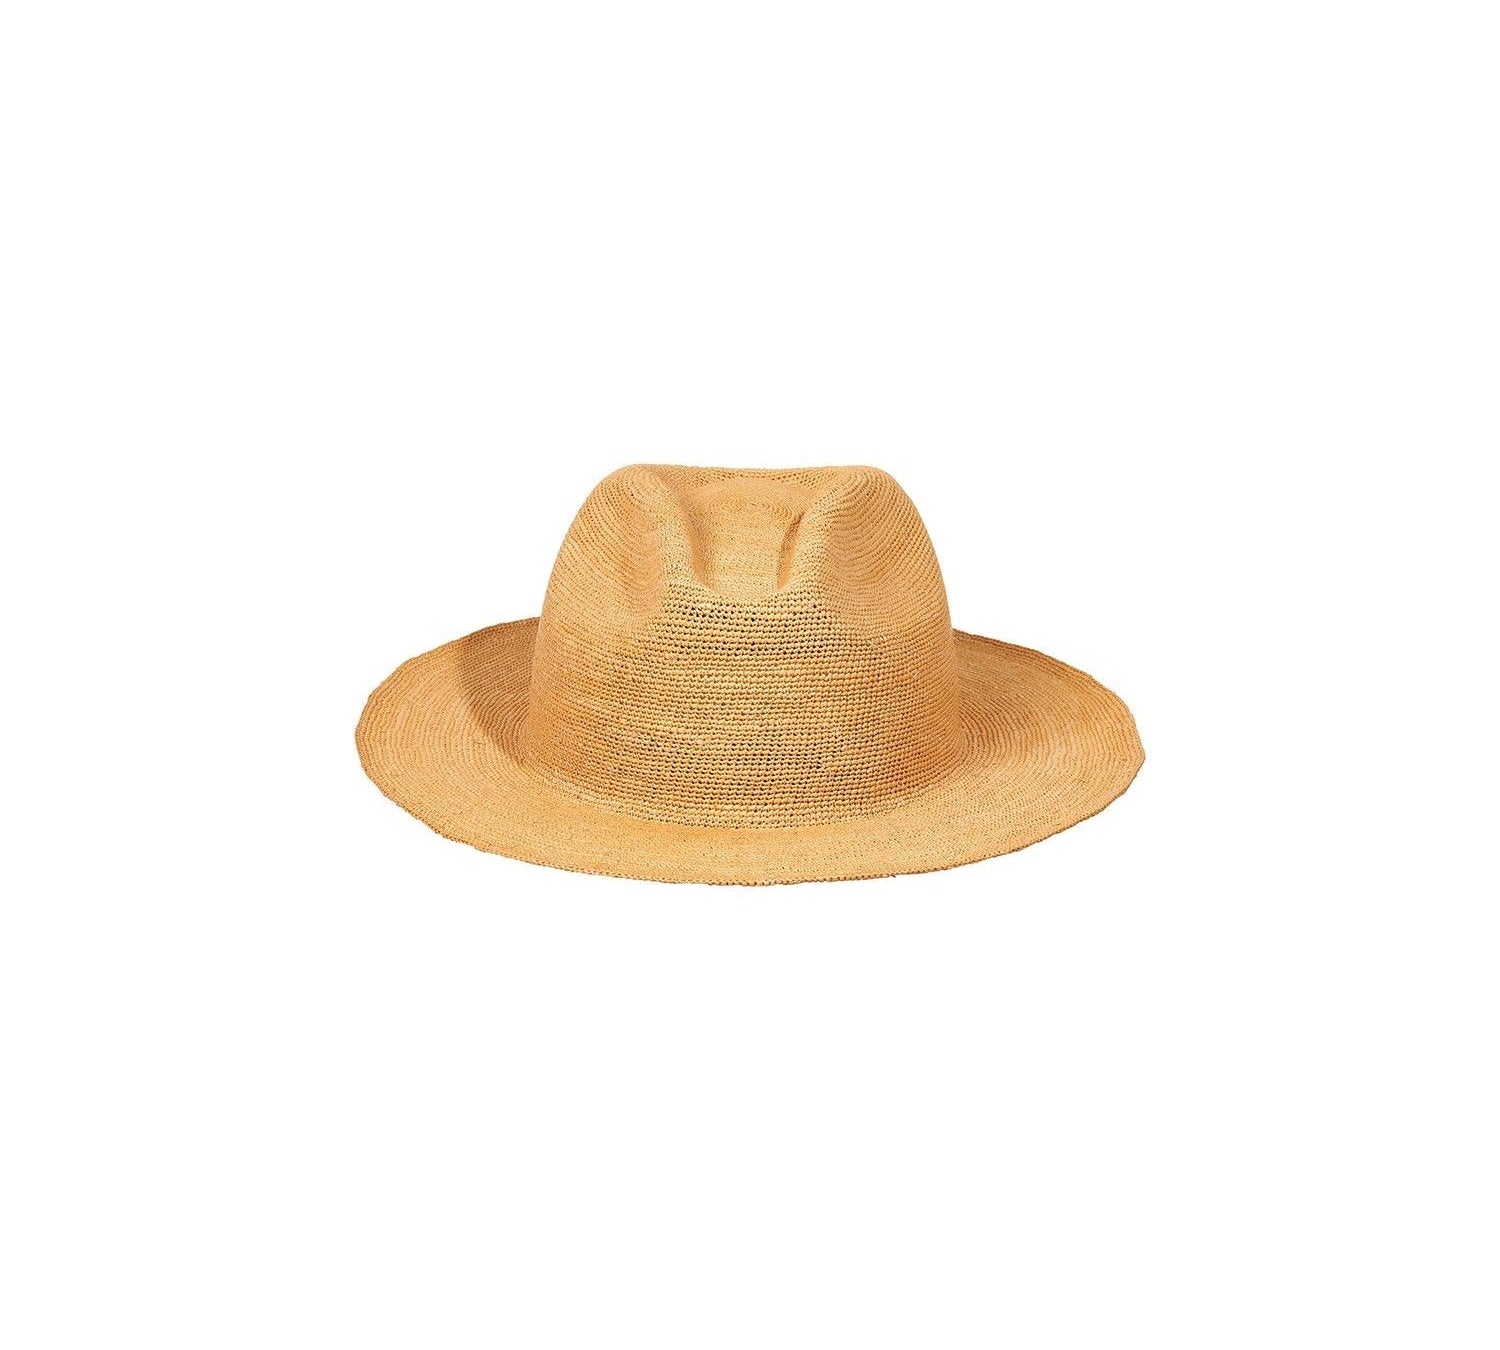 Rio - Packable Hat artesano